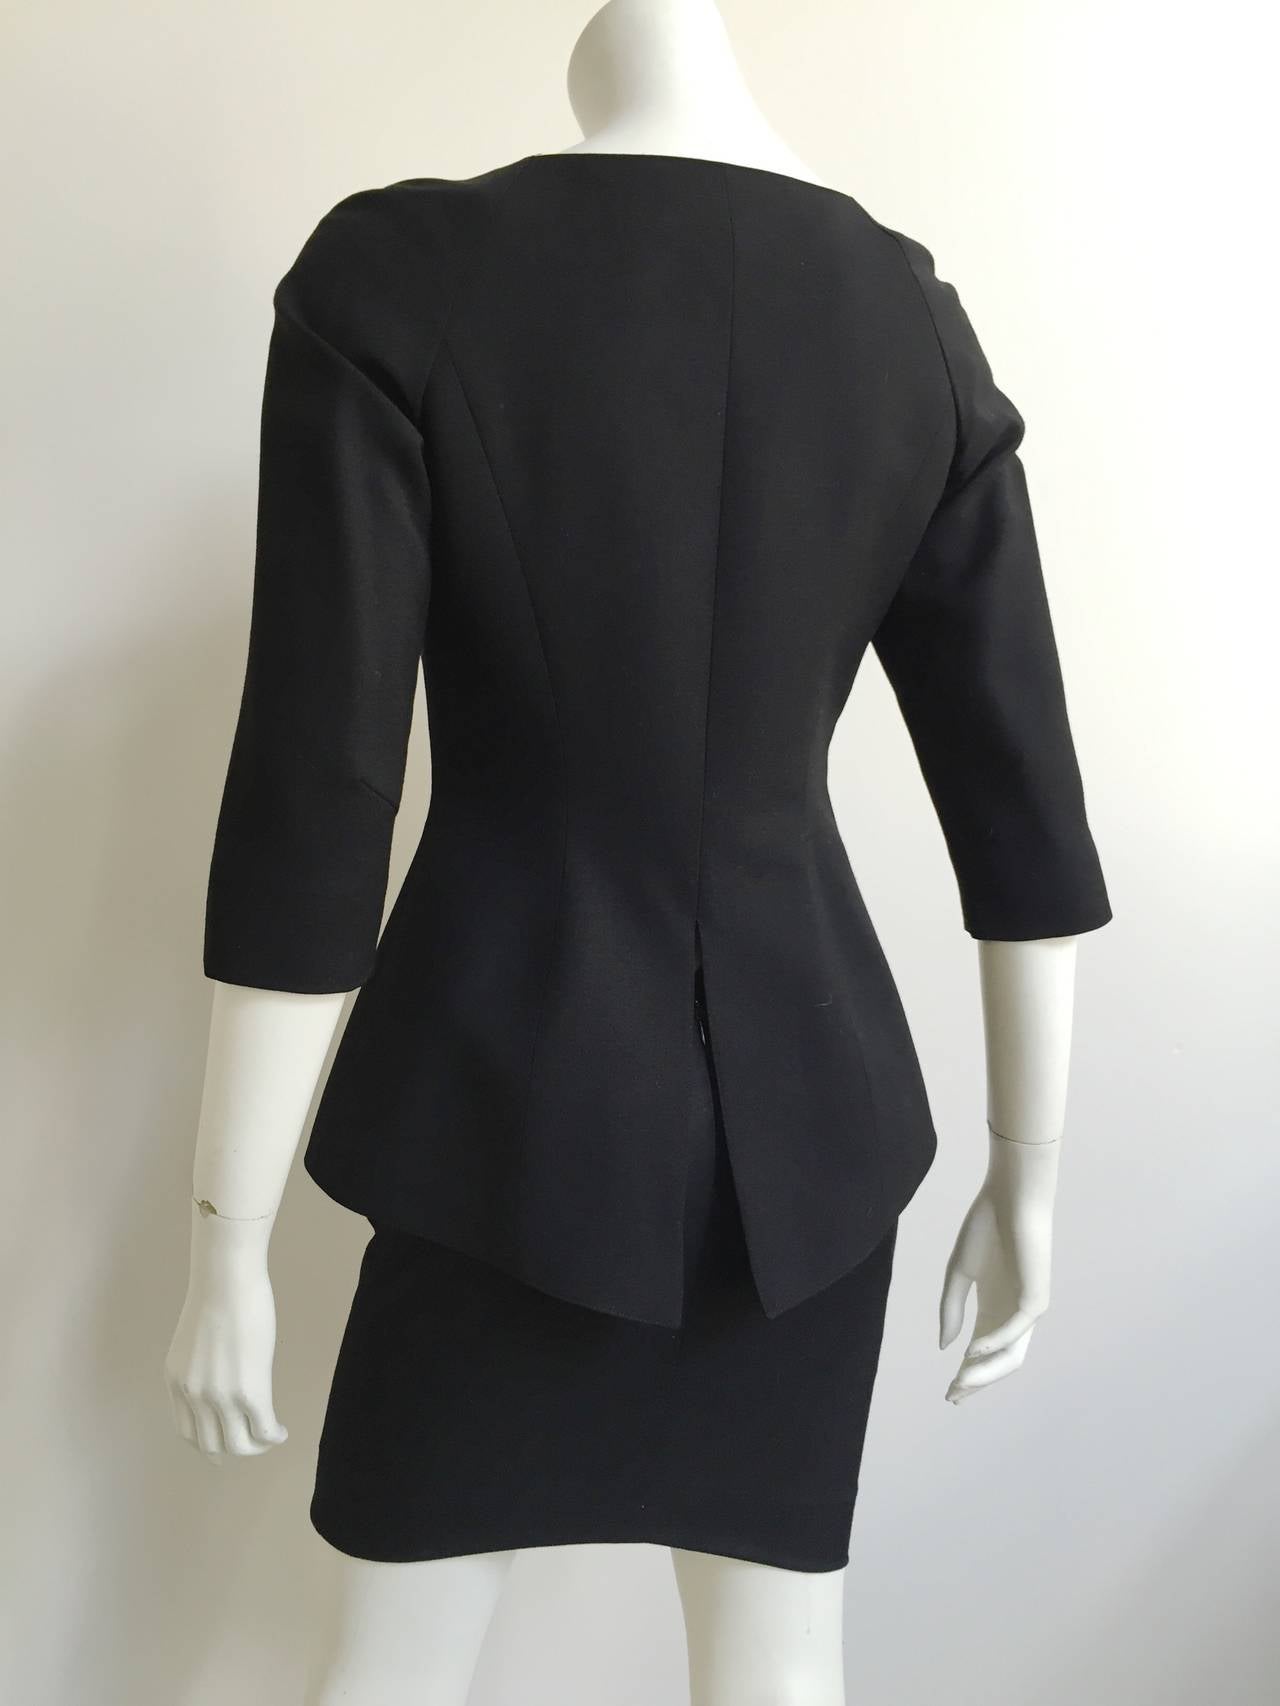 Lolita Lempicka Paris 80s black skirt suit size 4. 2